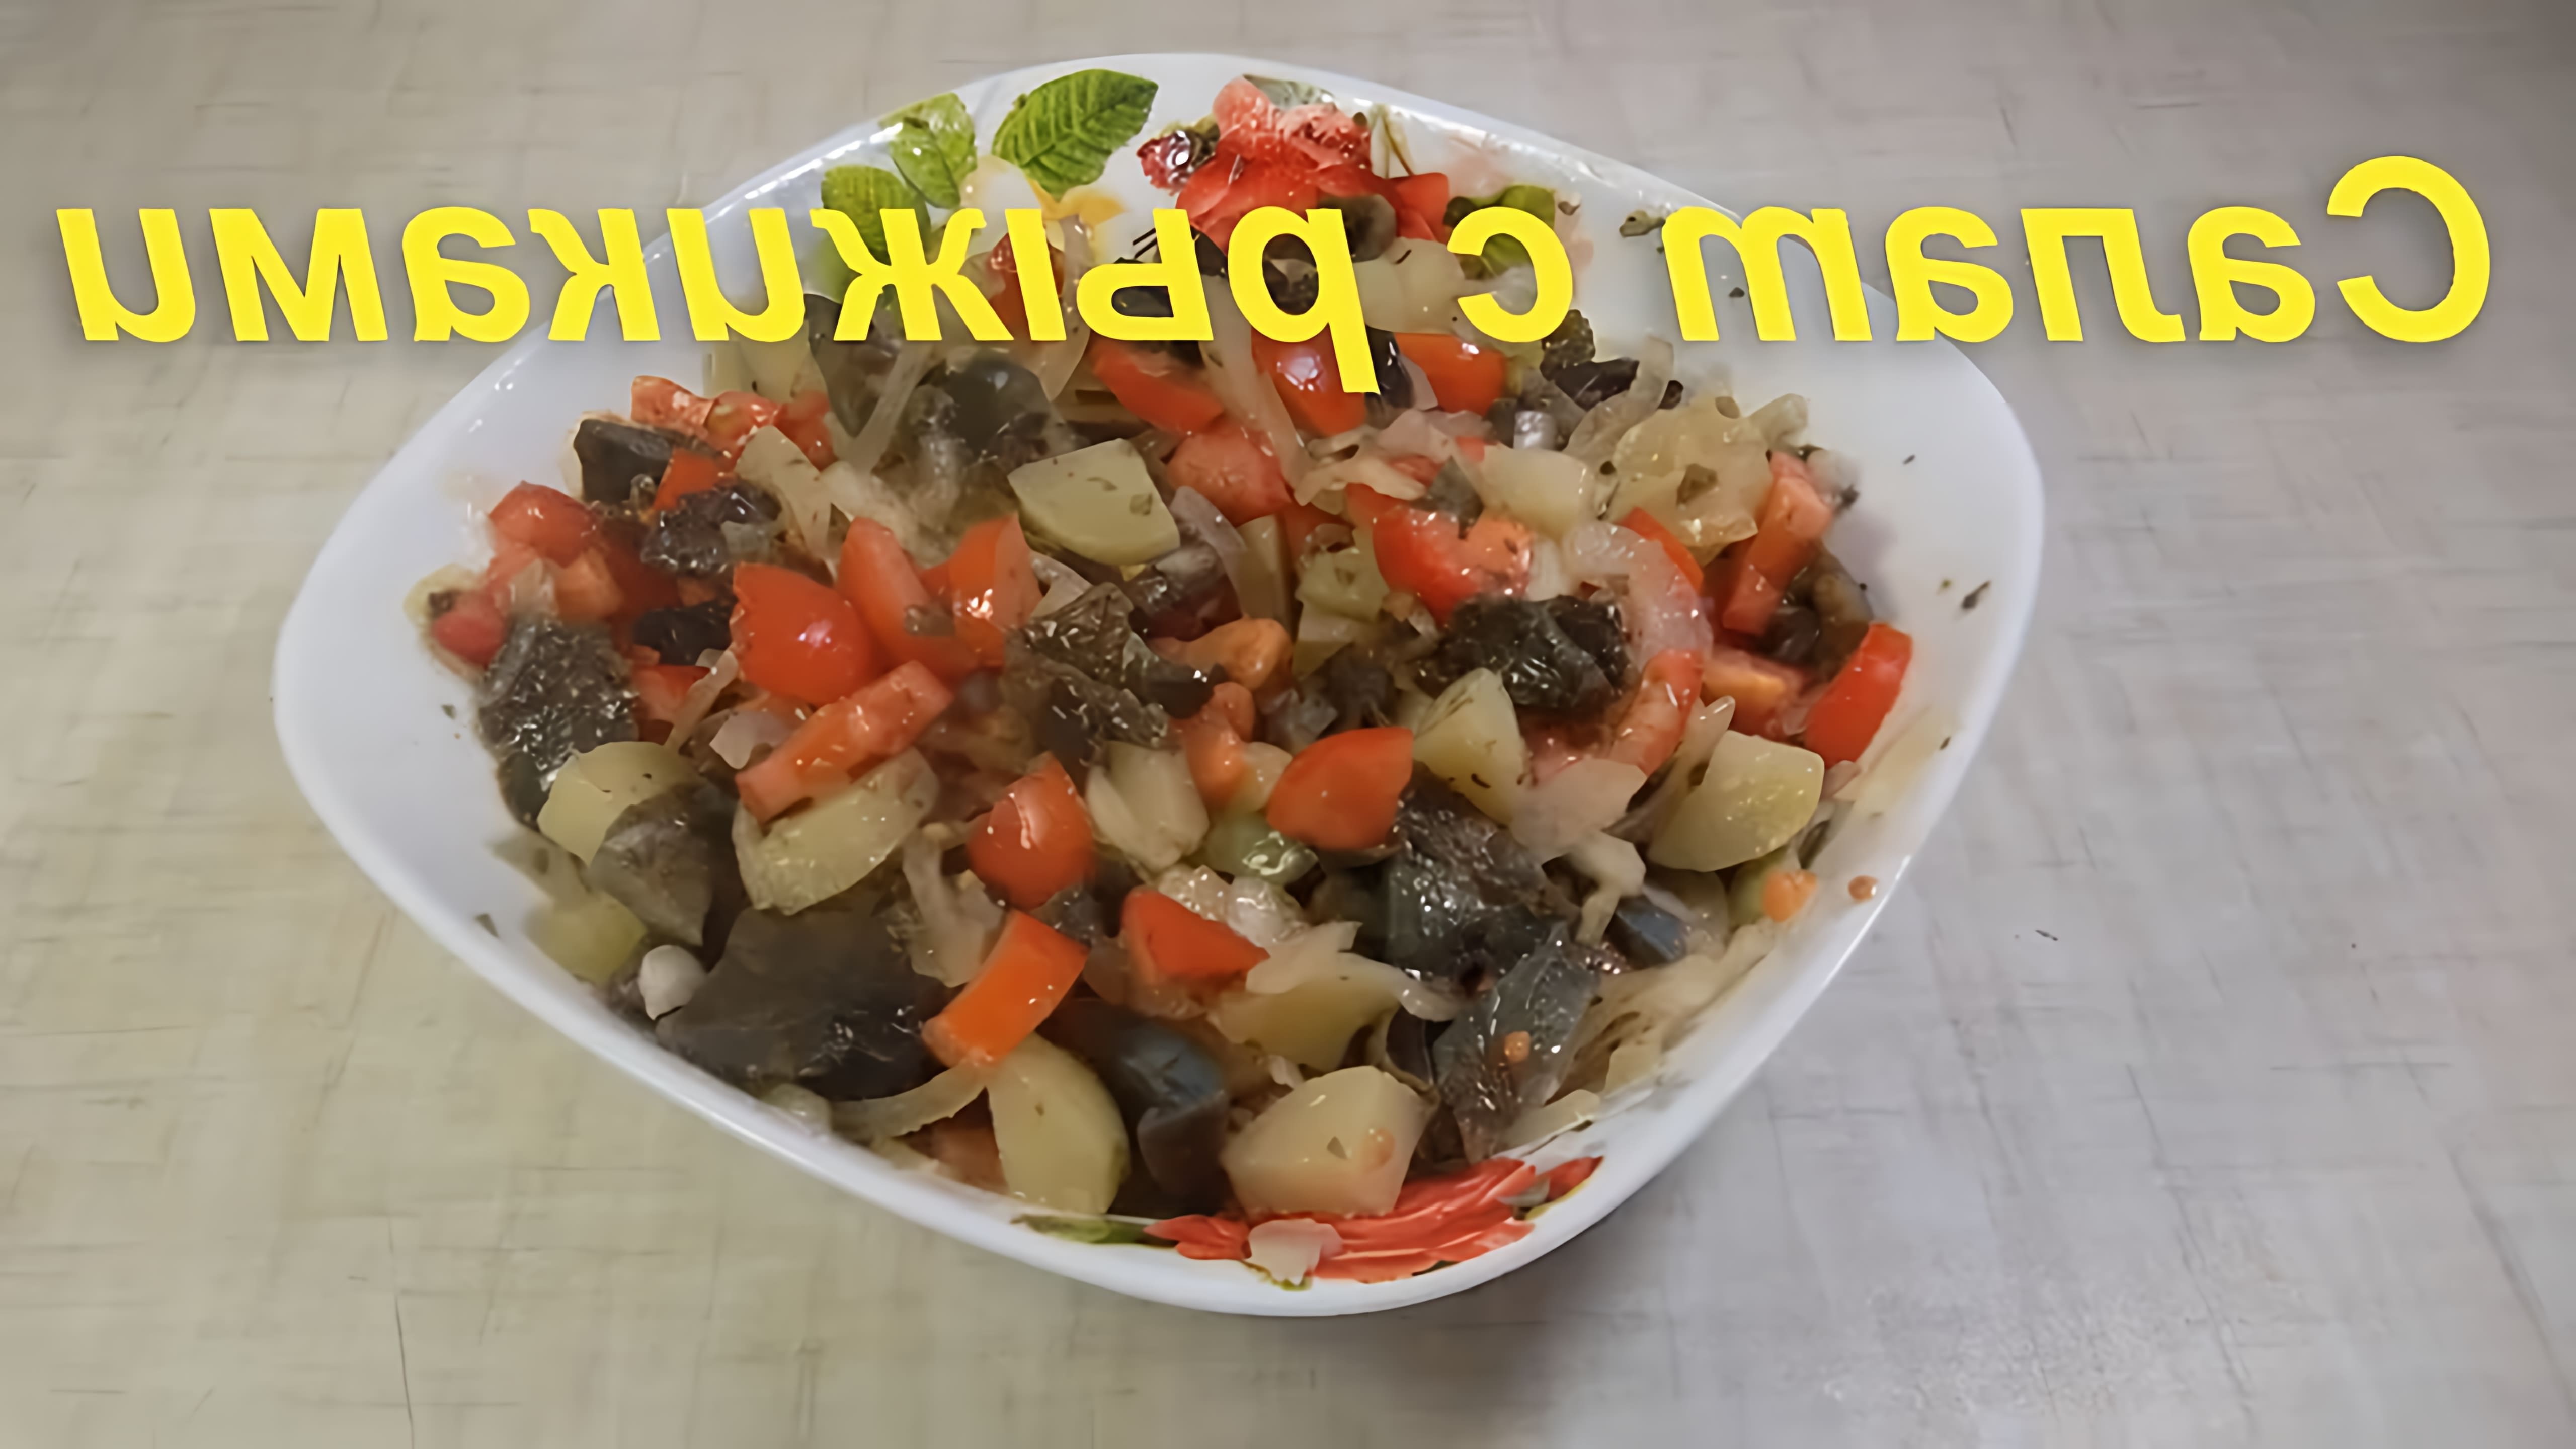 В этом видео демонстрируется рецепт приготовления салата с рыжиками